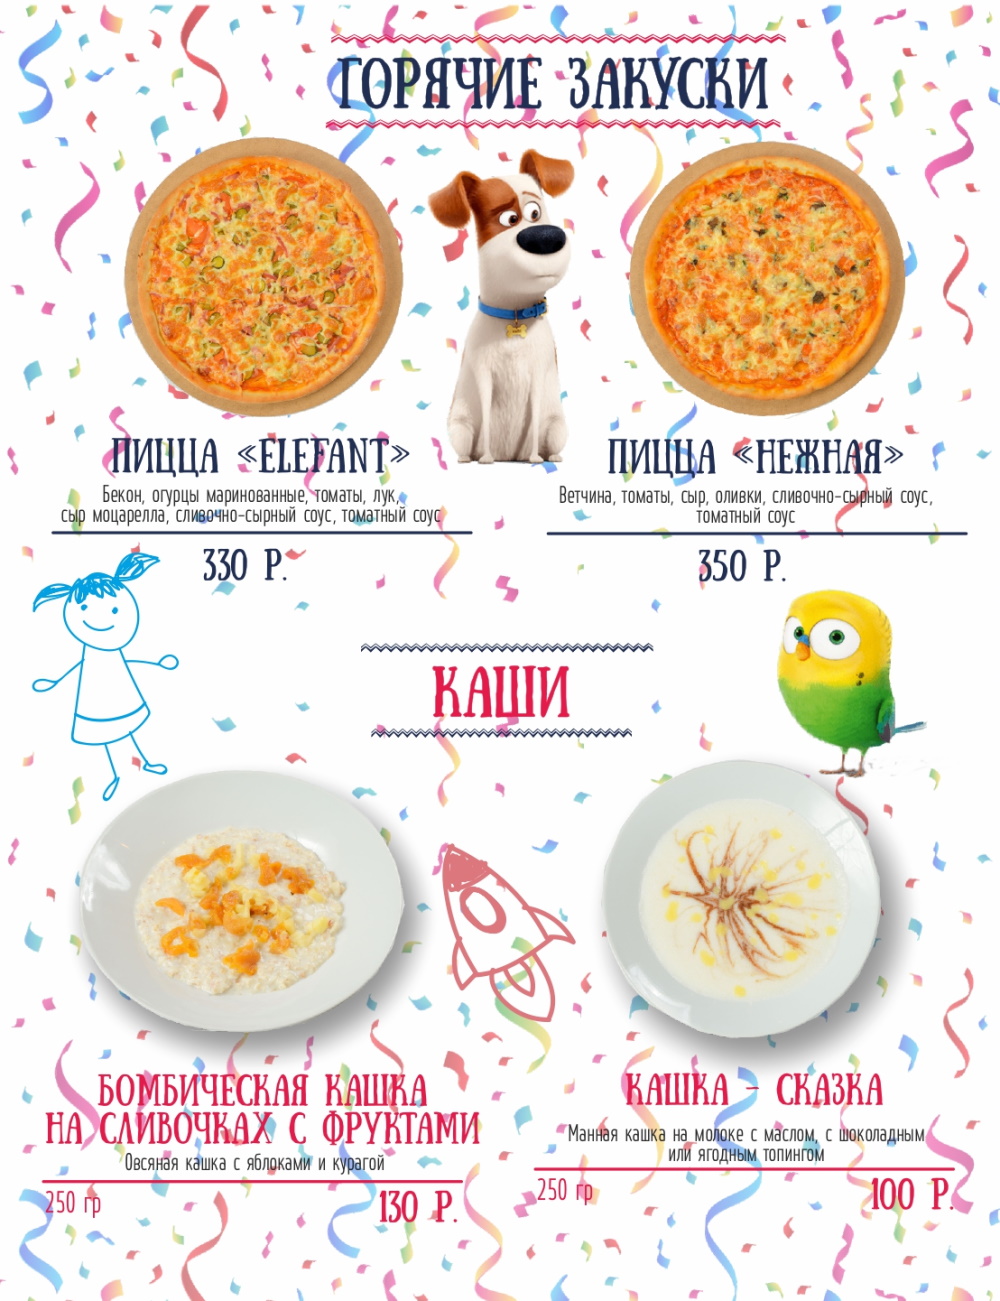 Детское меню в ресторанах Киева: вкусно, полезно, аппетитно